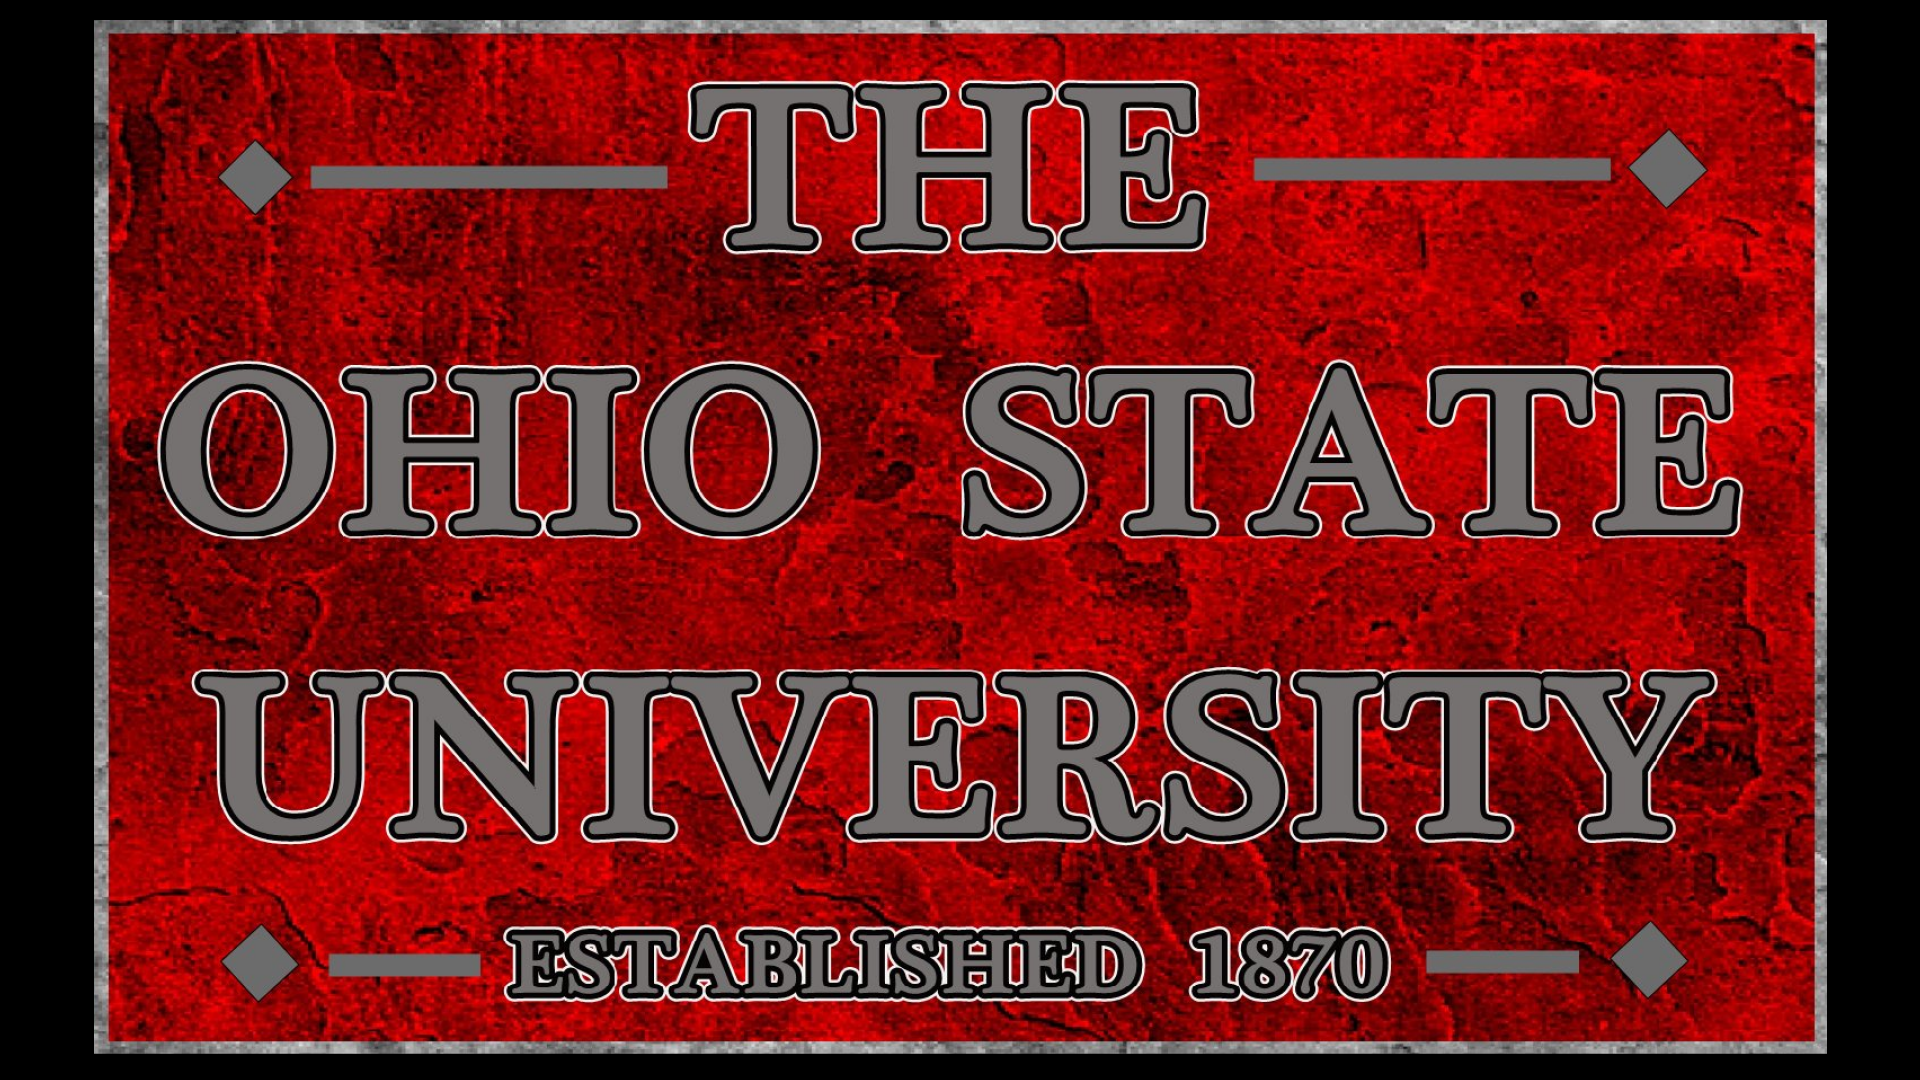 The Ohio State University Established